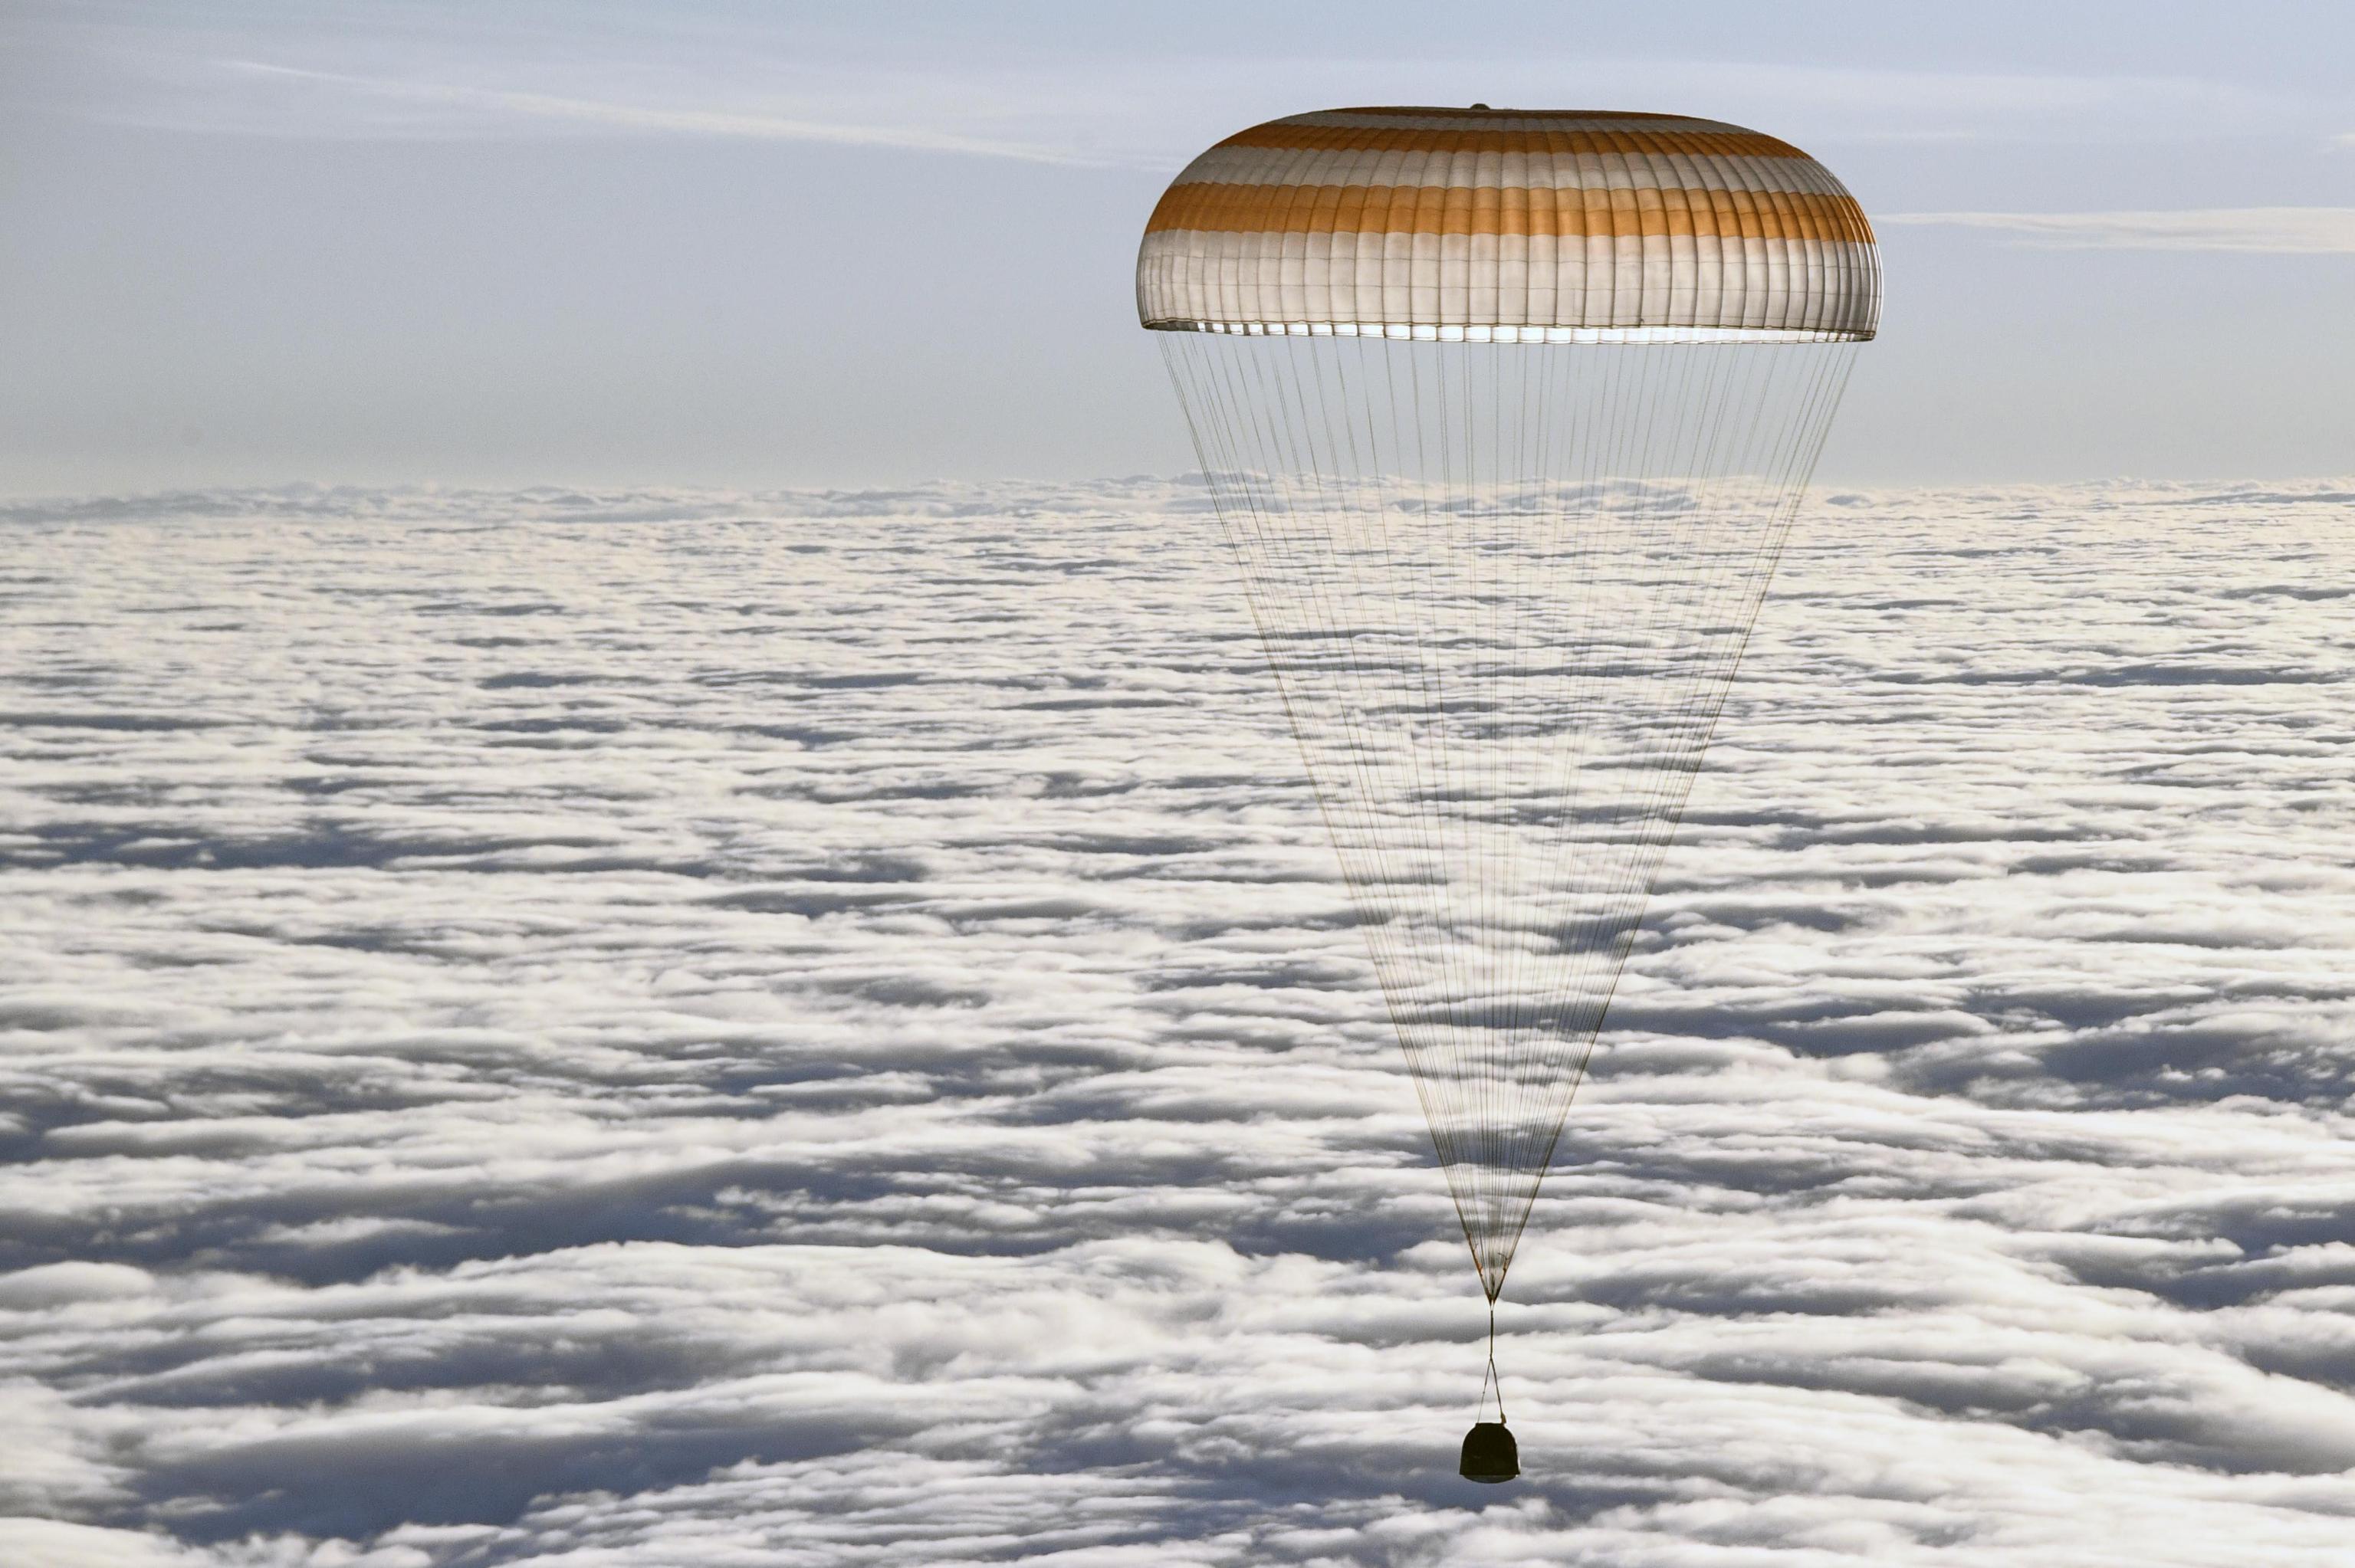 La capsula Soyuz appena sopra le nuvole. Tra poco toccherà Terra